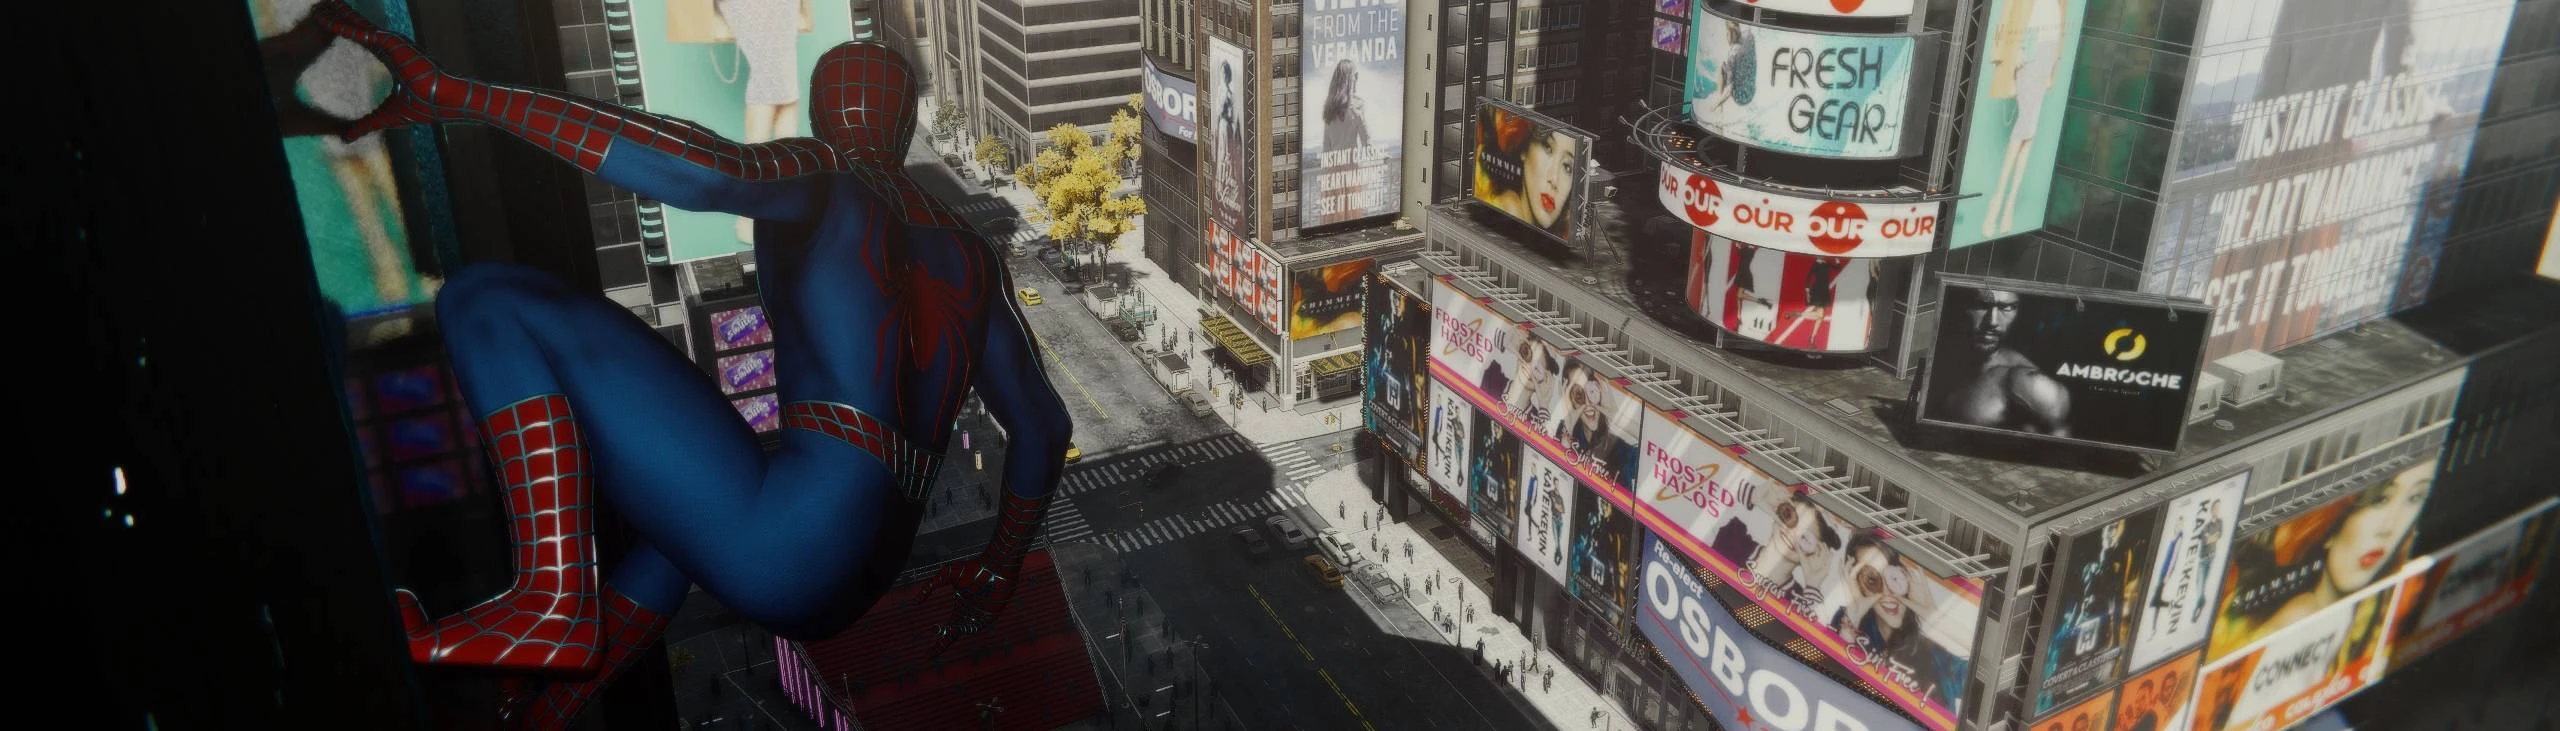 Mod de Marvel's Spider-Man torna CJ o novo protetor de Nova York